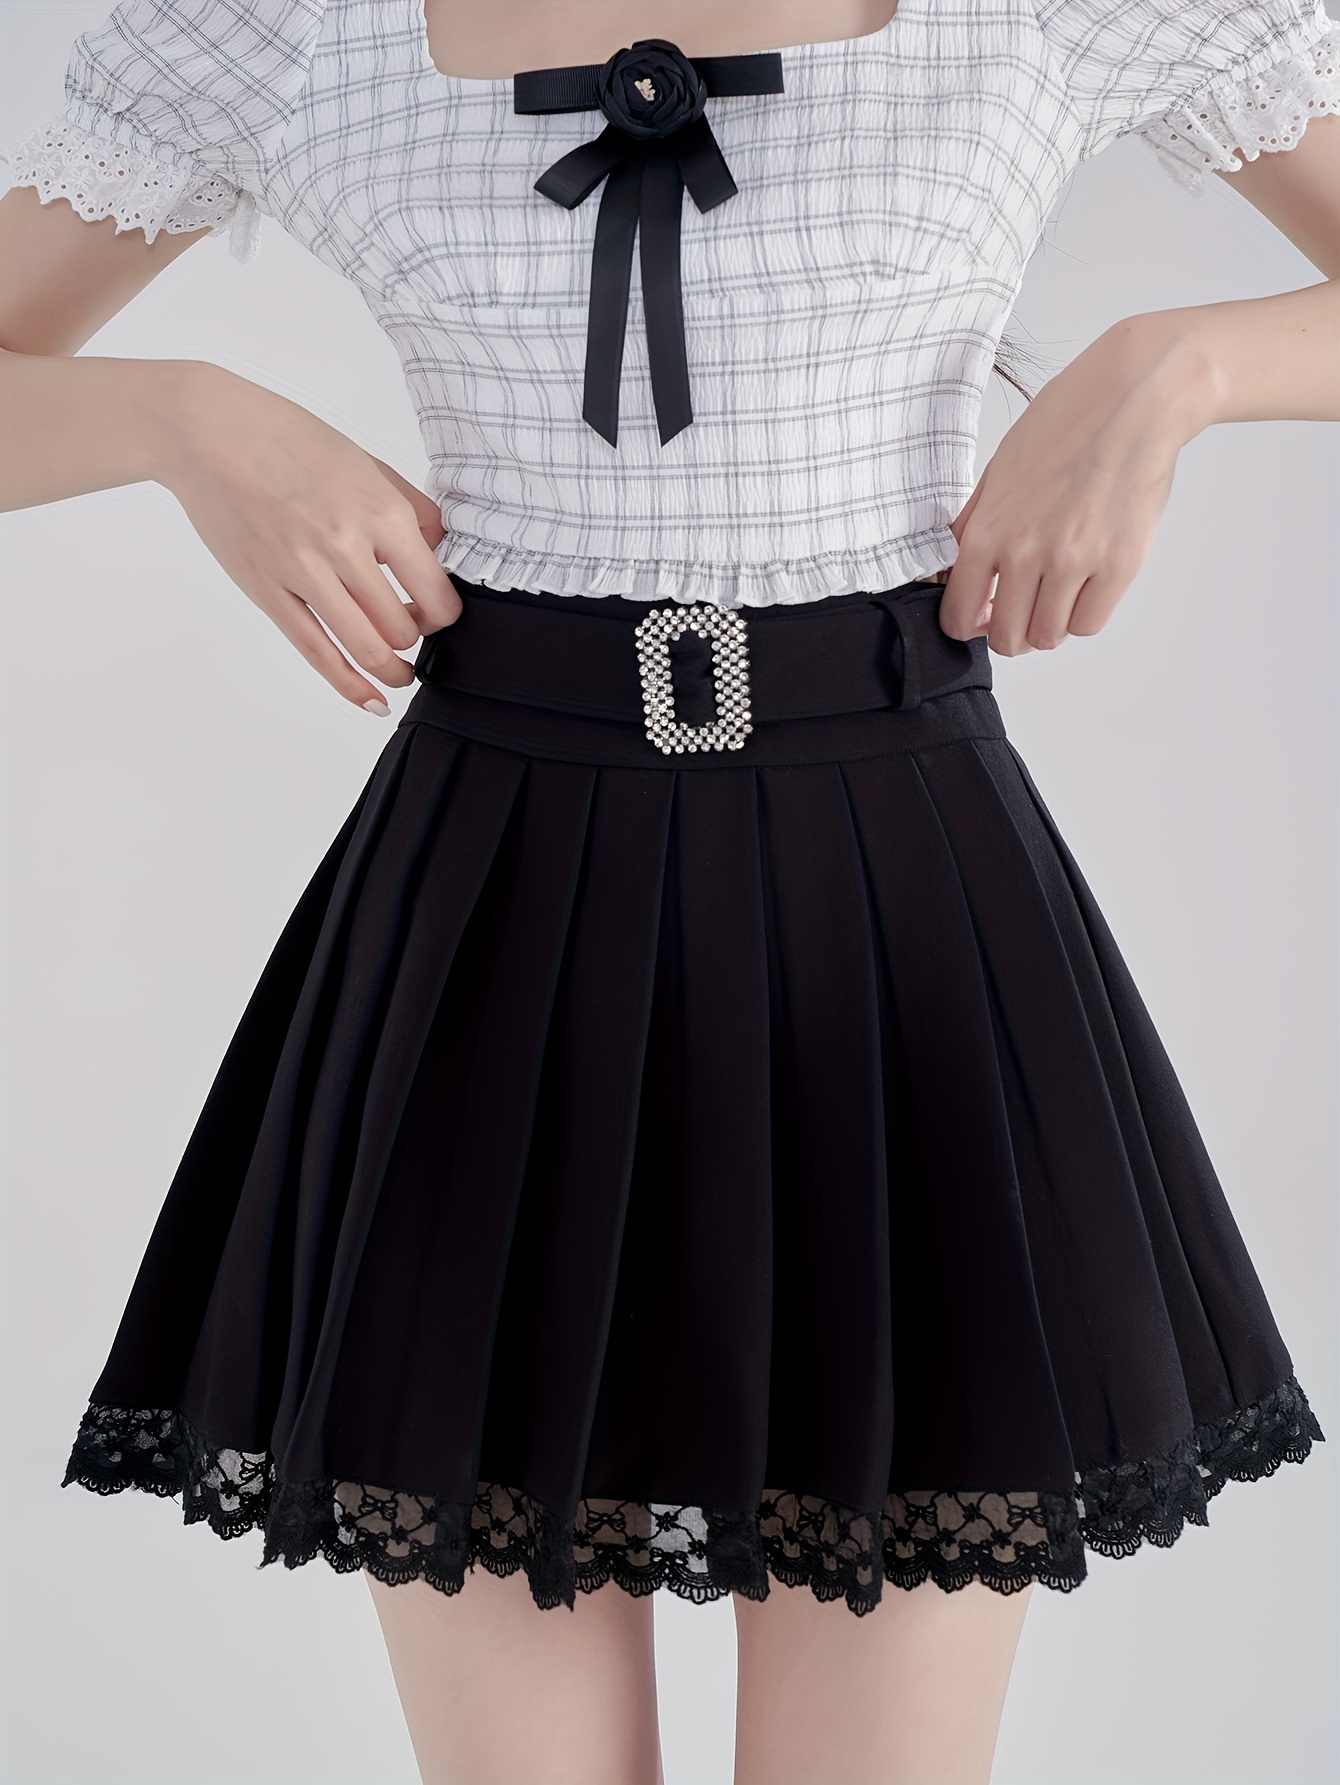 Solid High Waist Flared Skirt, Elegant Zip Back Mini Skirt, Women's Clothing